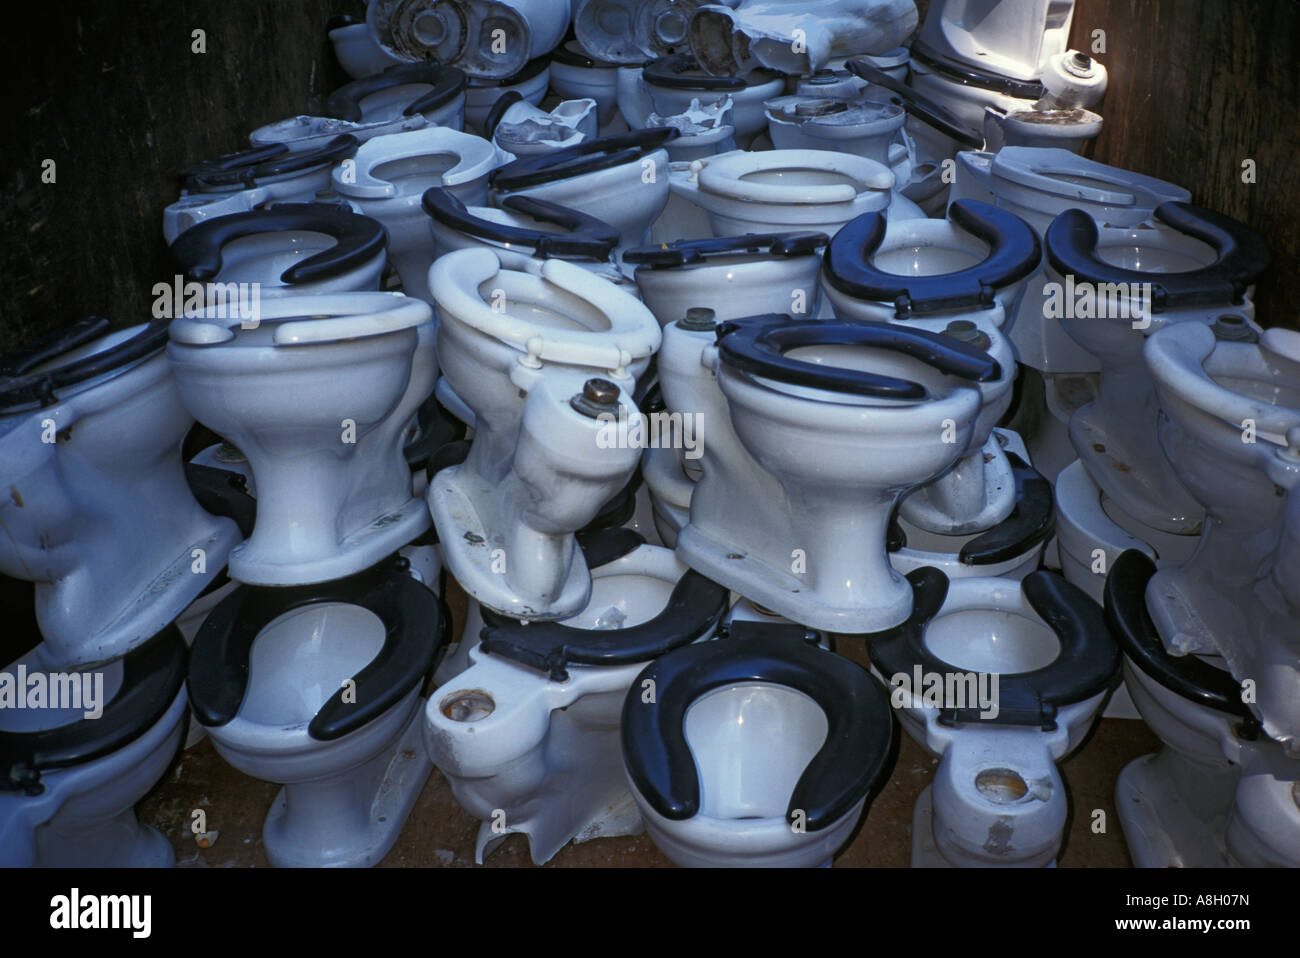 toilets midtown NYC Stock Photo